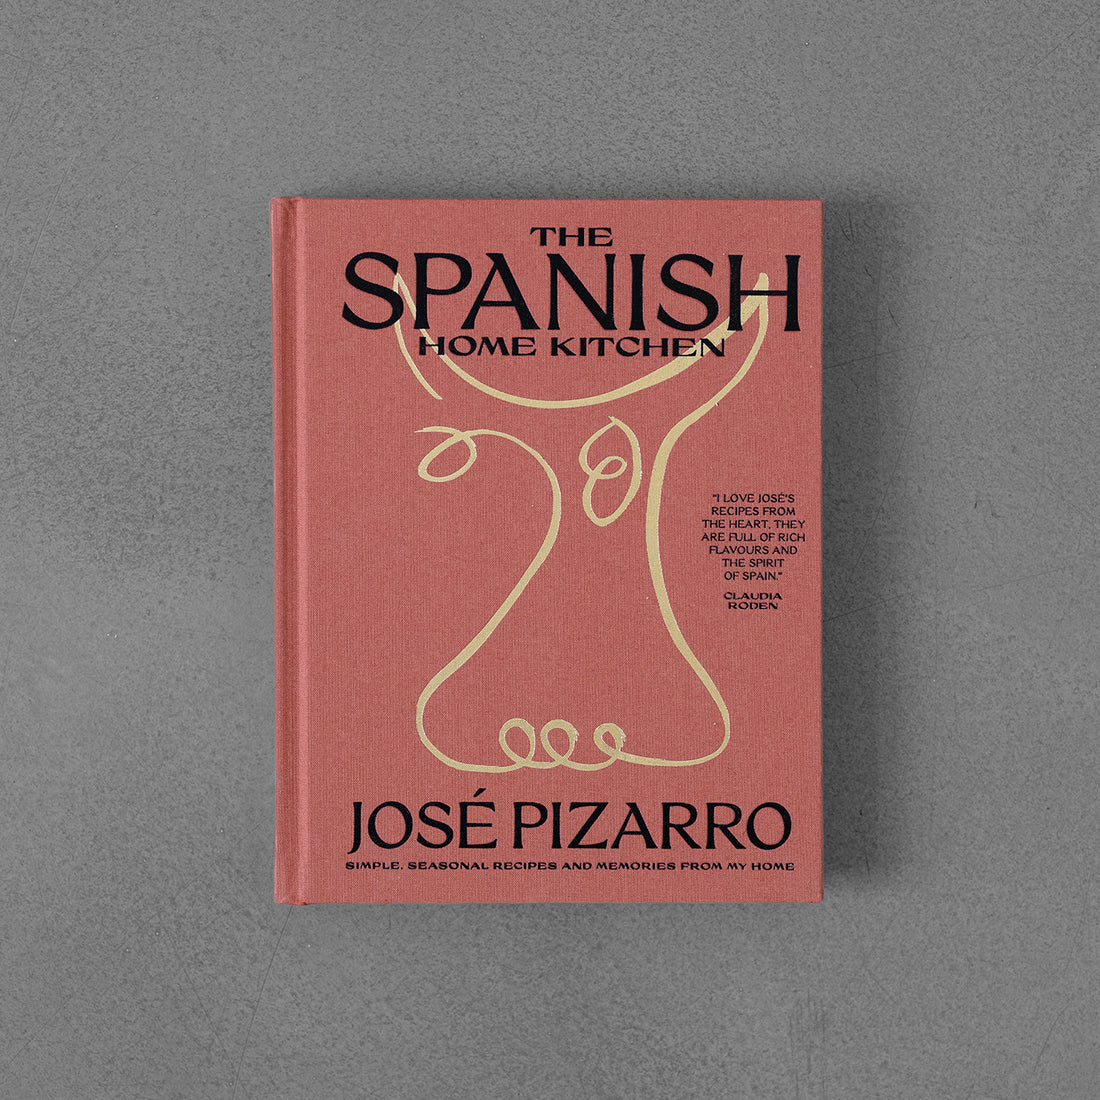 Hiszpańska kuchnia domowa, proste, sezonowe przepisy... José Pizarro